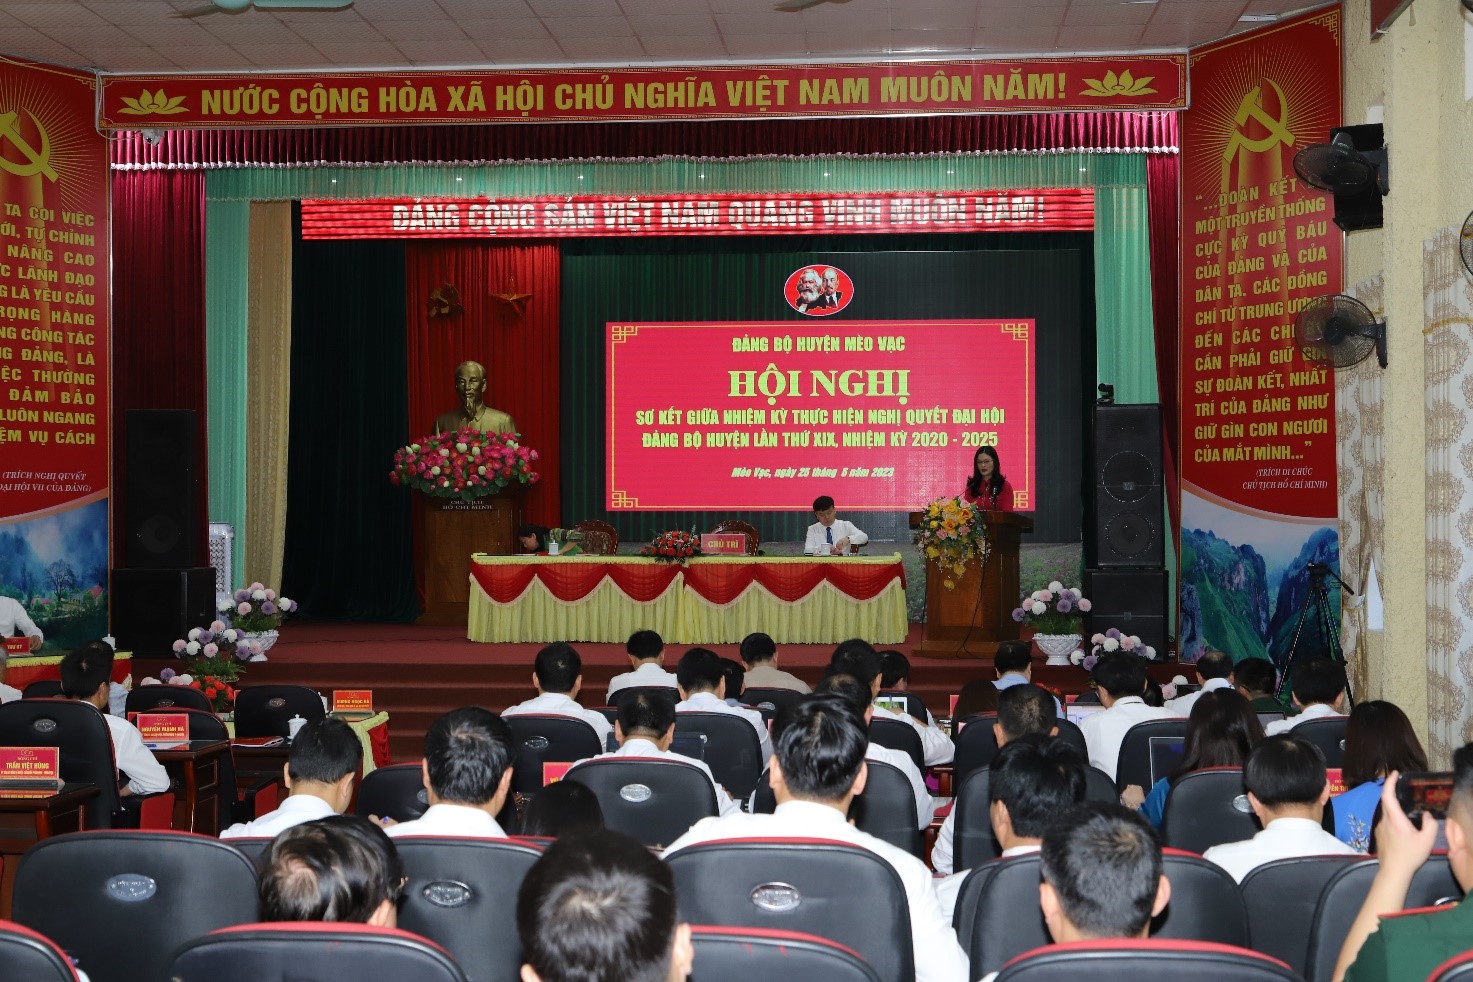 Hội nghị sơ kết giữa nhiệm kỳ Đại hội Đảng bộ huyện Mèo Vạc lần thứ XIX